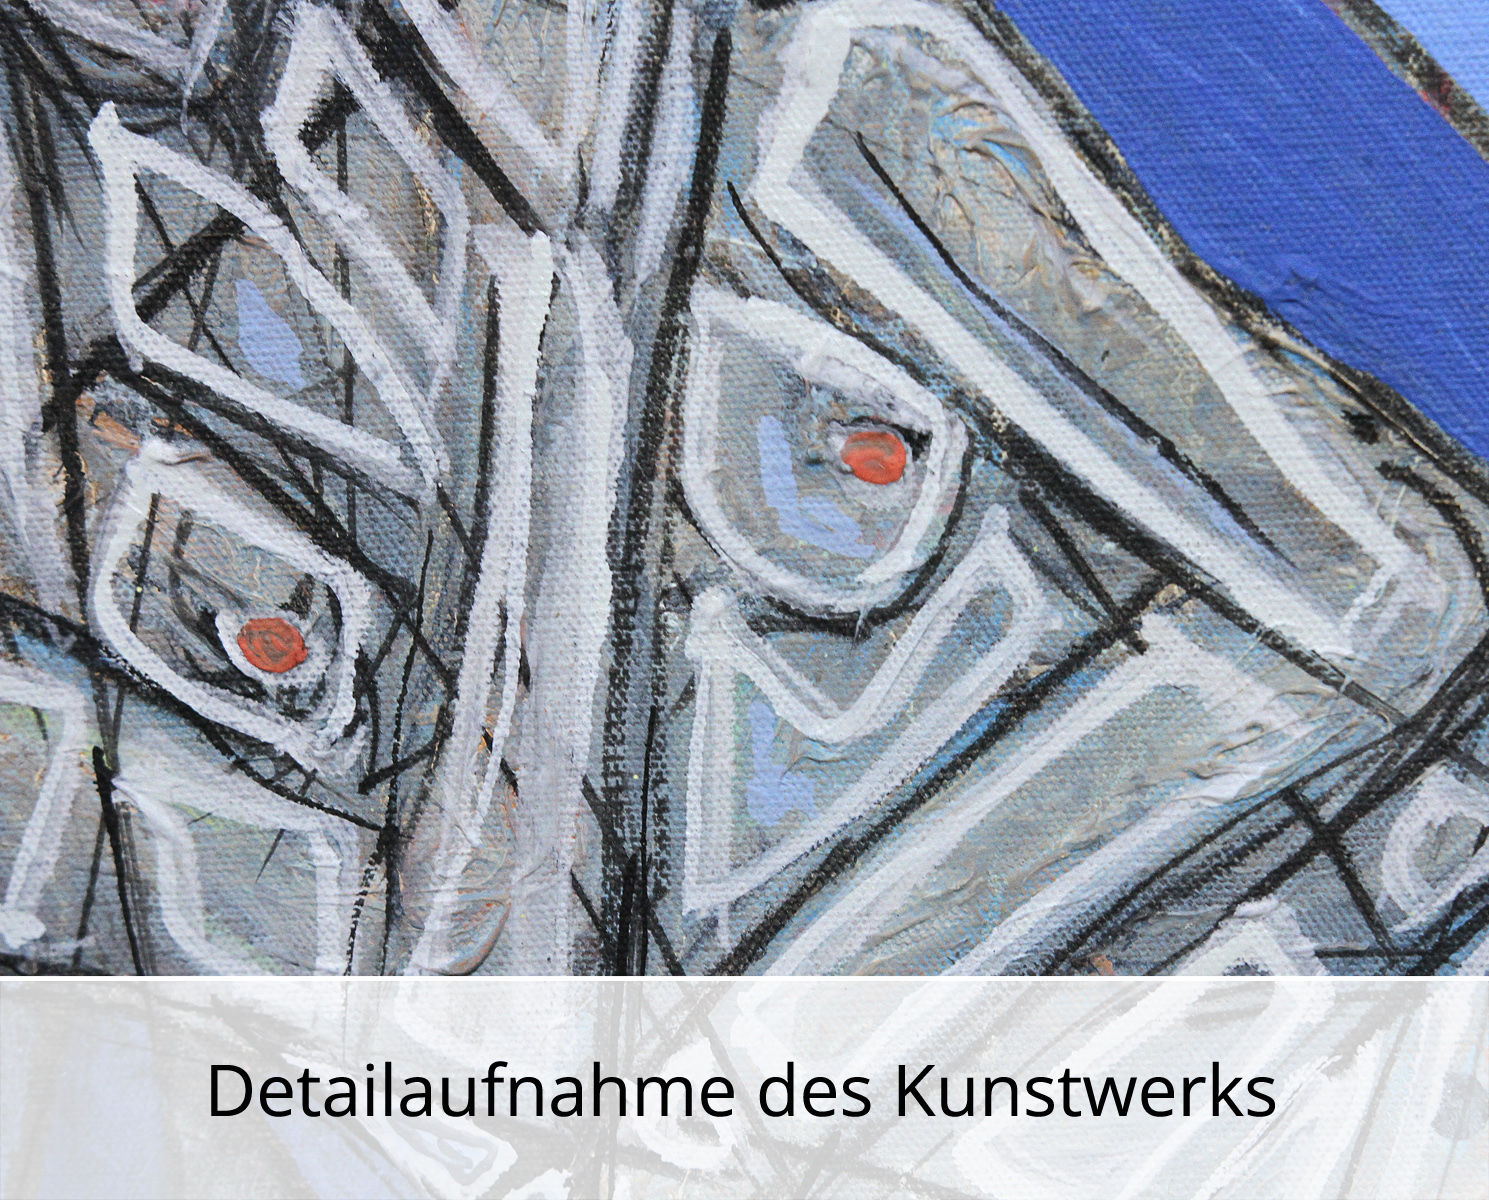 C. Blechschmidt: "Akt auf Blau", Original/Unikat, zeitgenössisches Ölgemälde